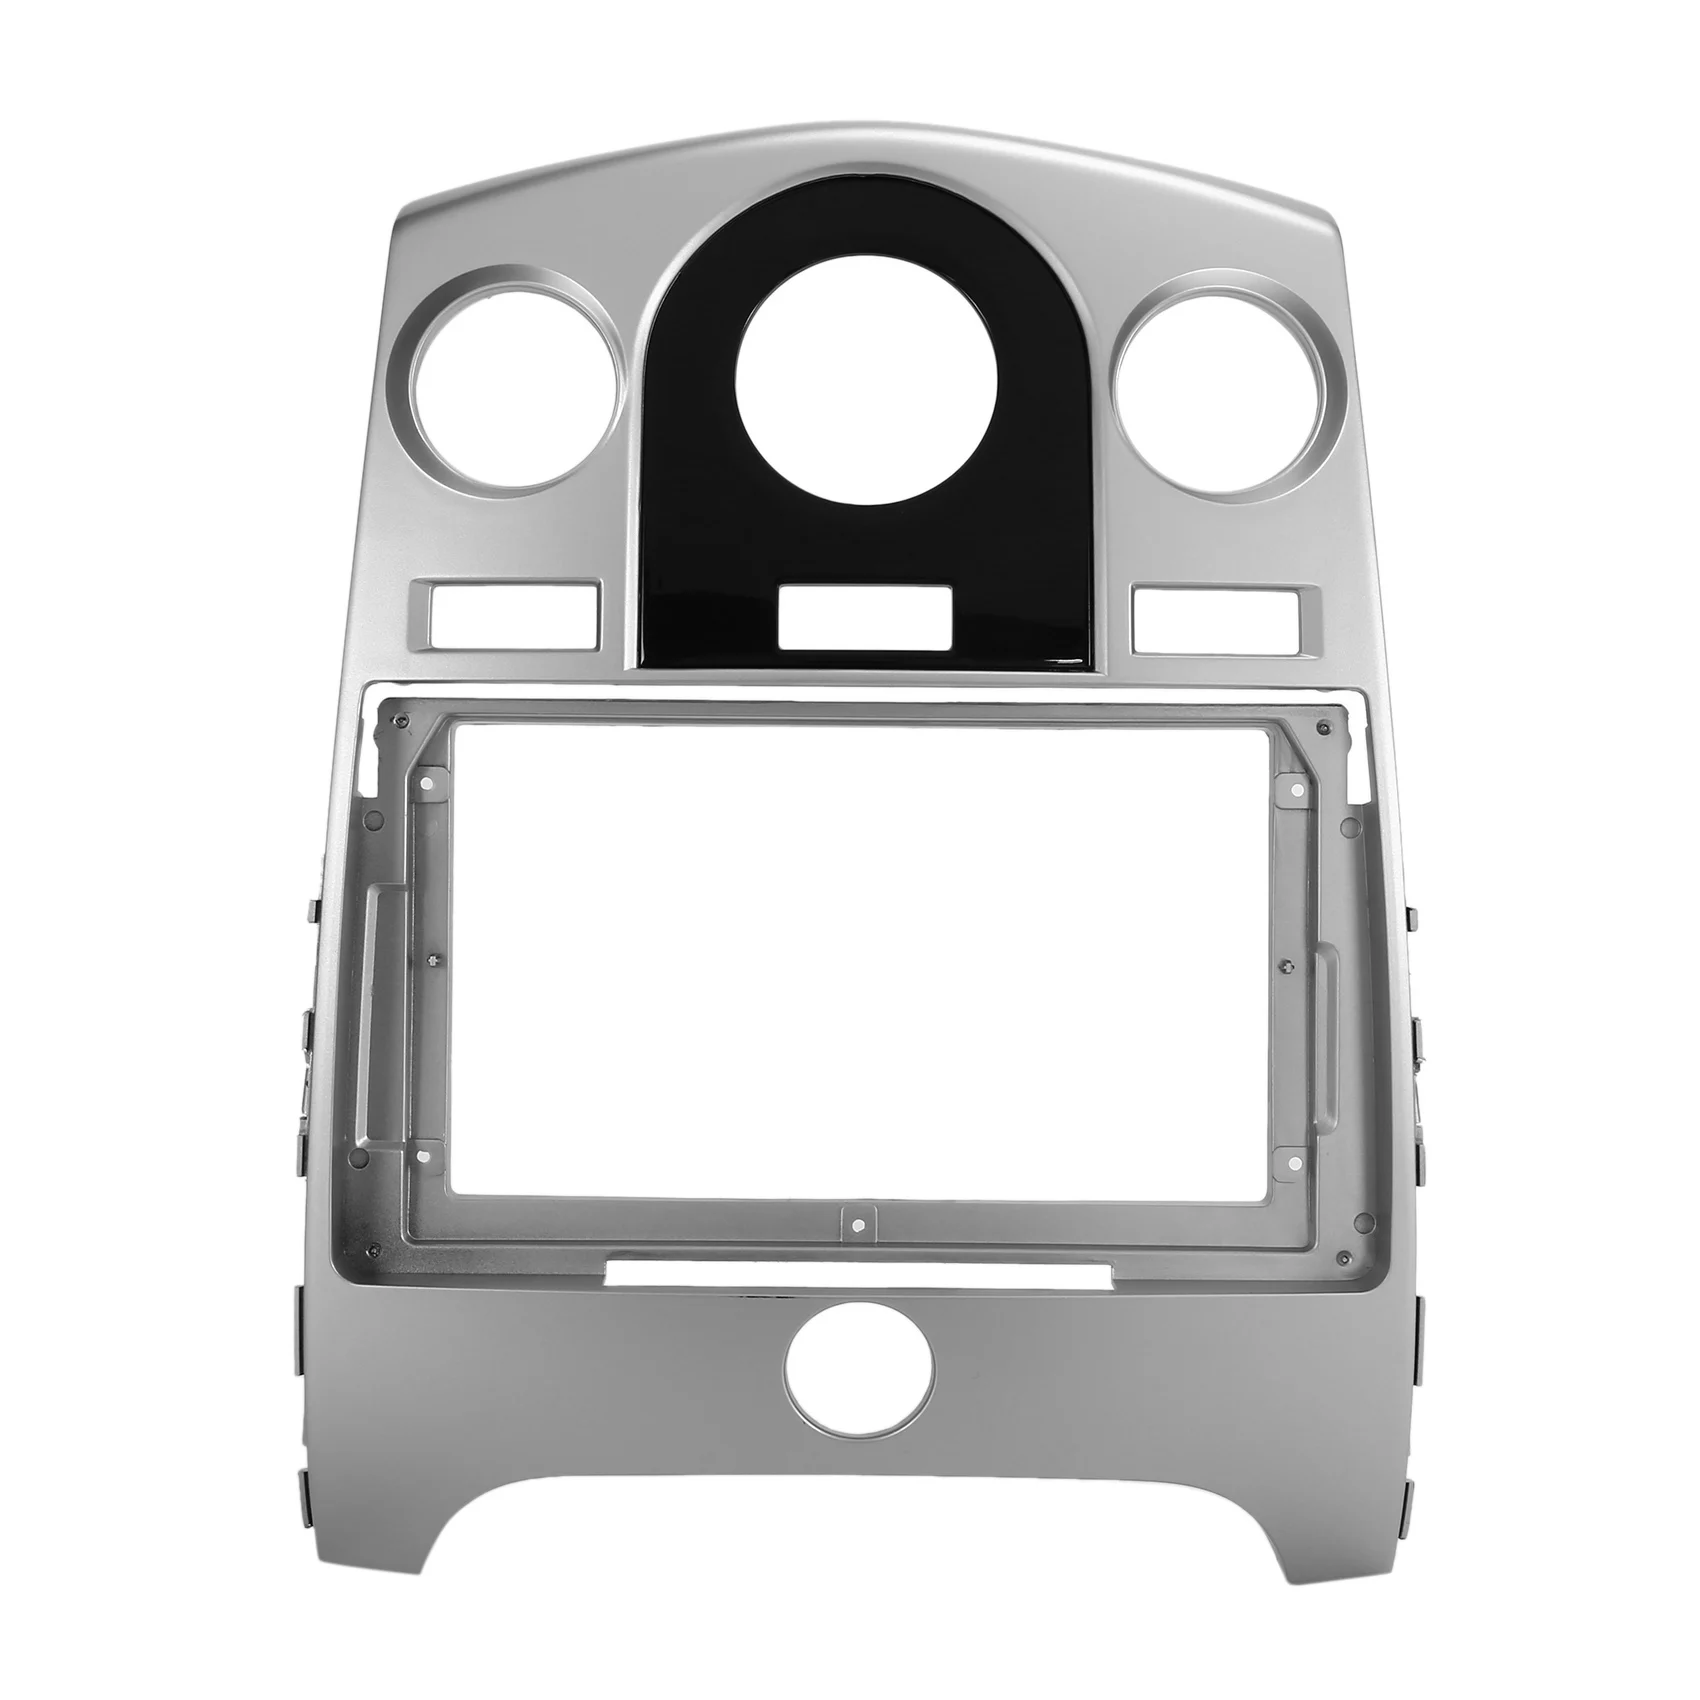 

9 Inch 2 Din Car Stereo Radio Fascia CD Panel Frame Dash Adapter Mount Kit for KIA Cerato / Forte 2009-2012(Manual AC)